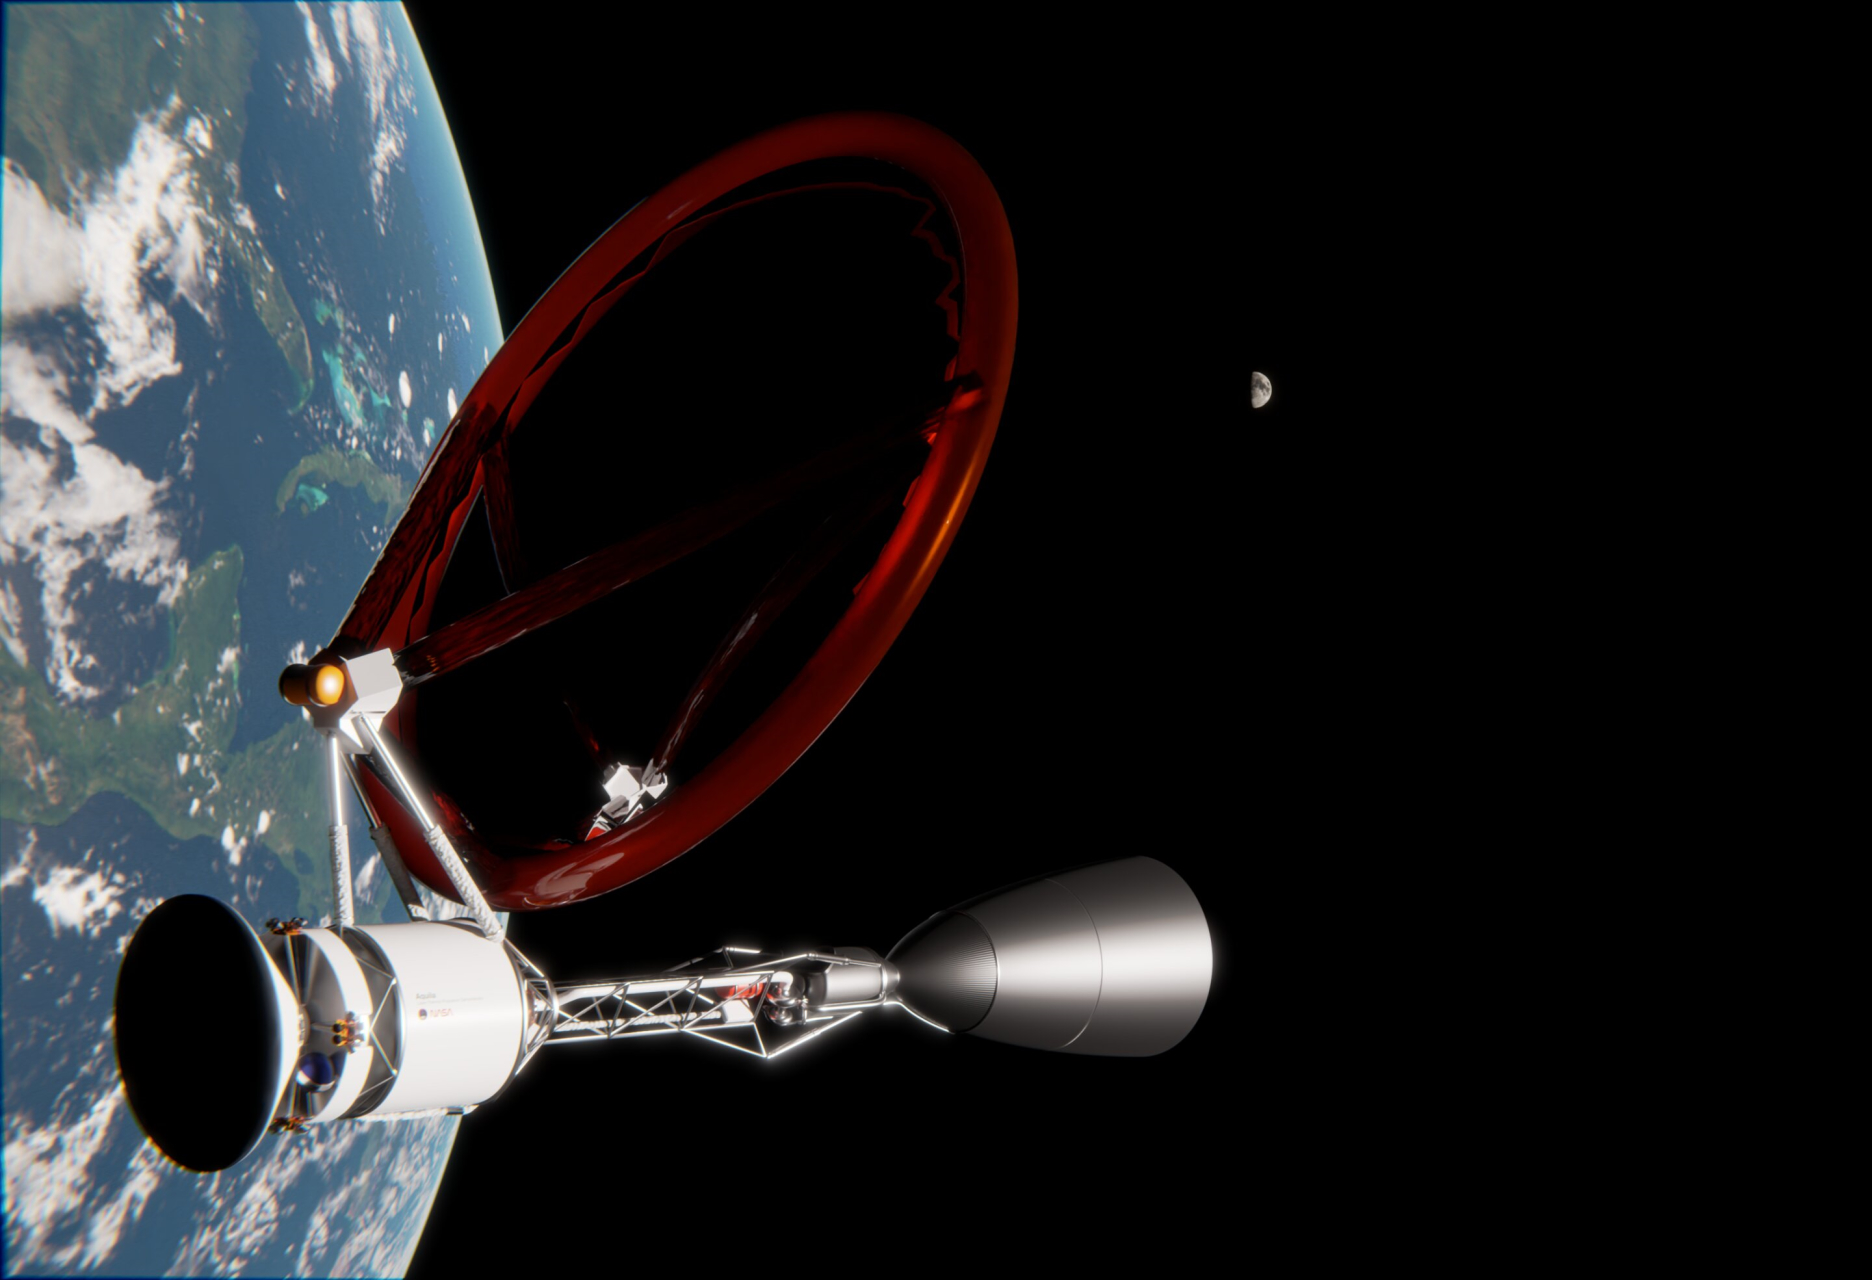 Svemirska letjelica na laserski pogon u Zemljinoj orbiti čeka svoj odlazak. Zasluge Creative Commons Attribution 4.0 Međunarodna licenca